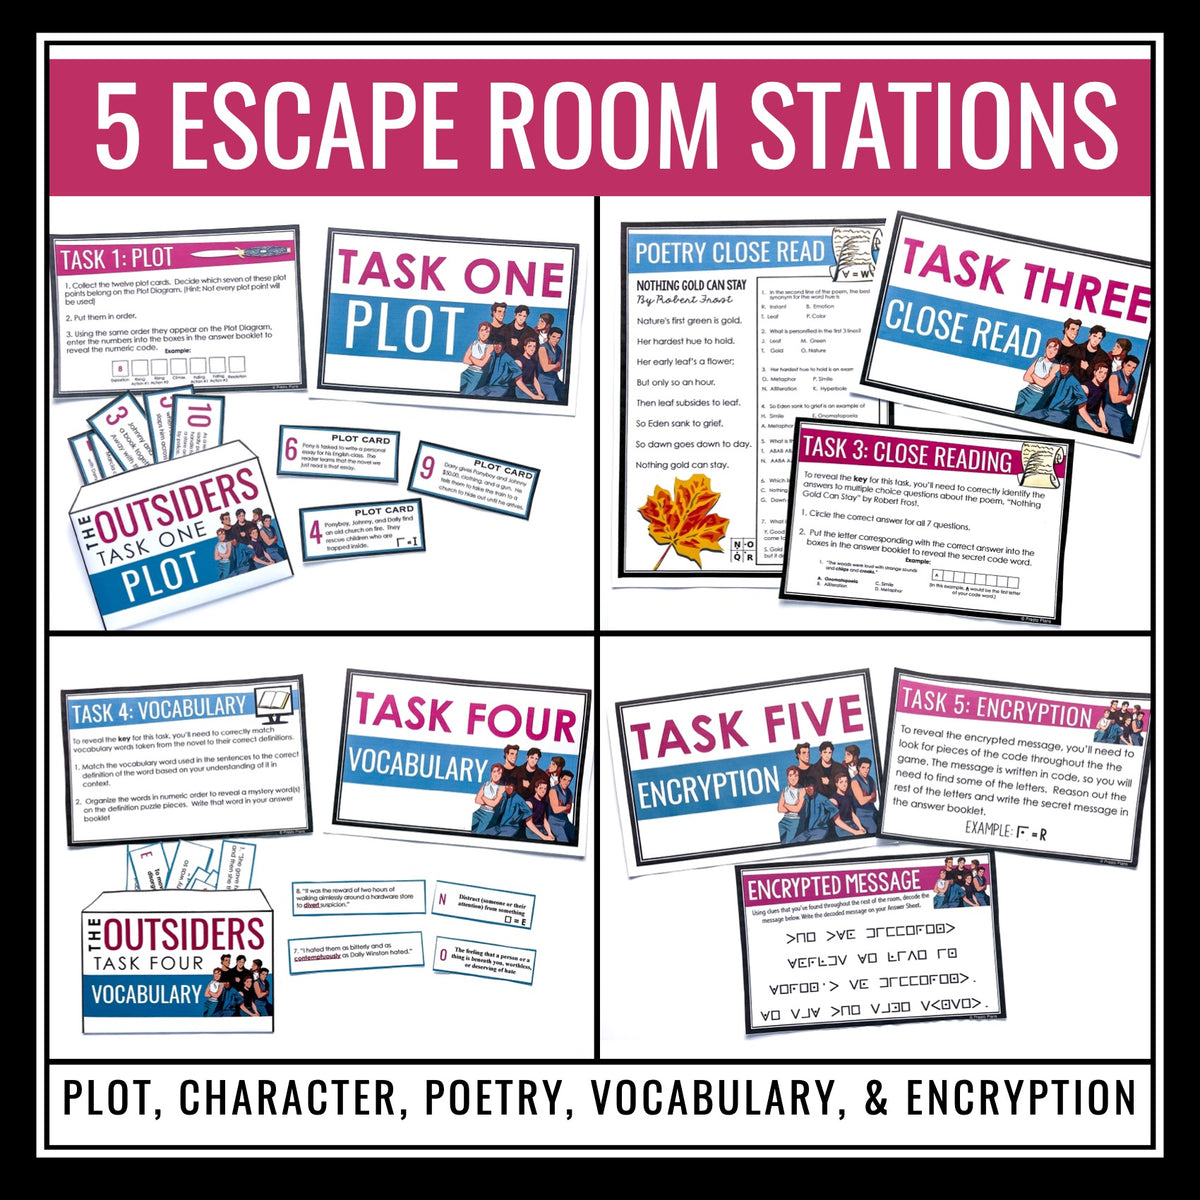 Holes Escape Room Novel Activity - Breakout Review for Louis